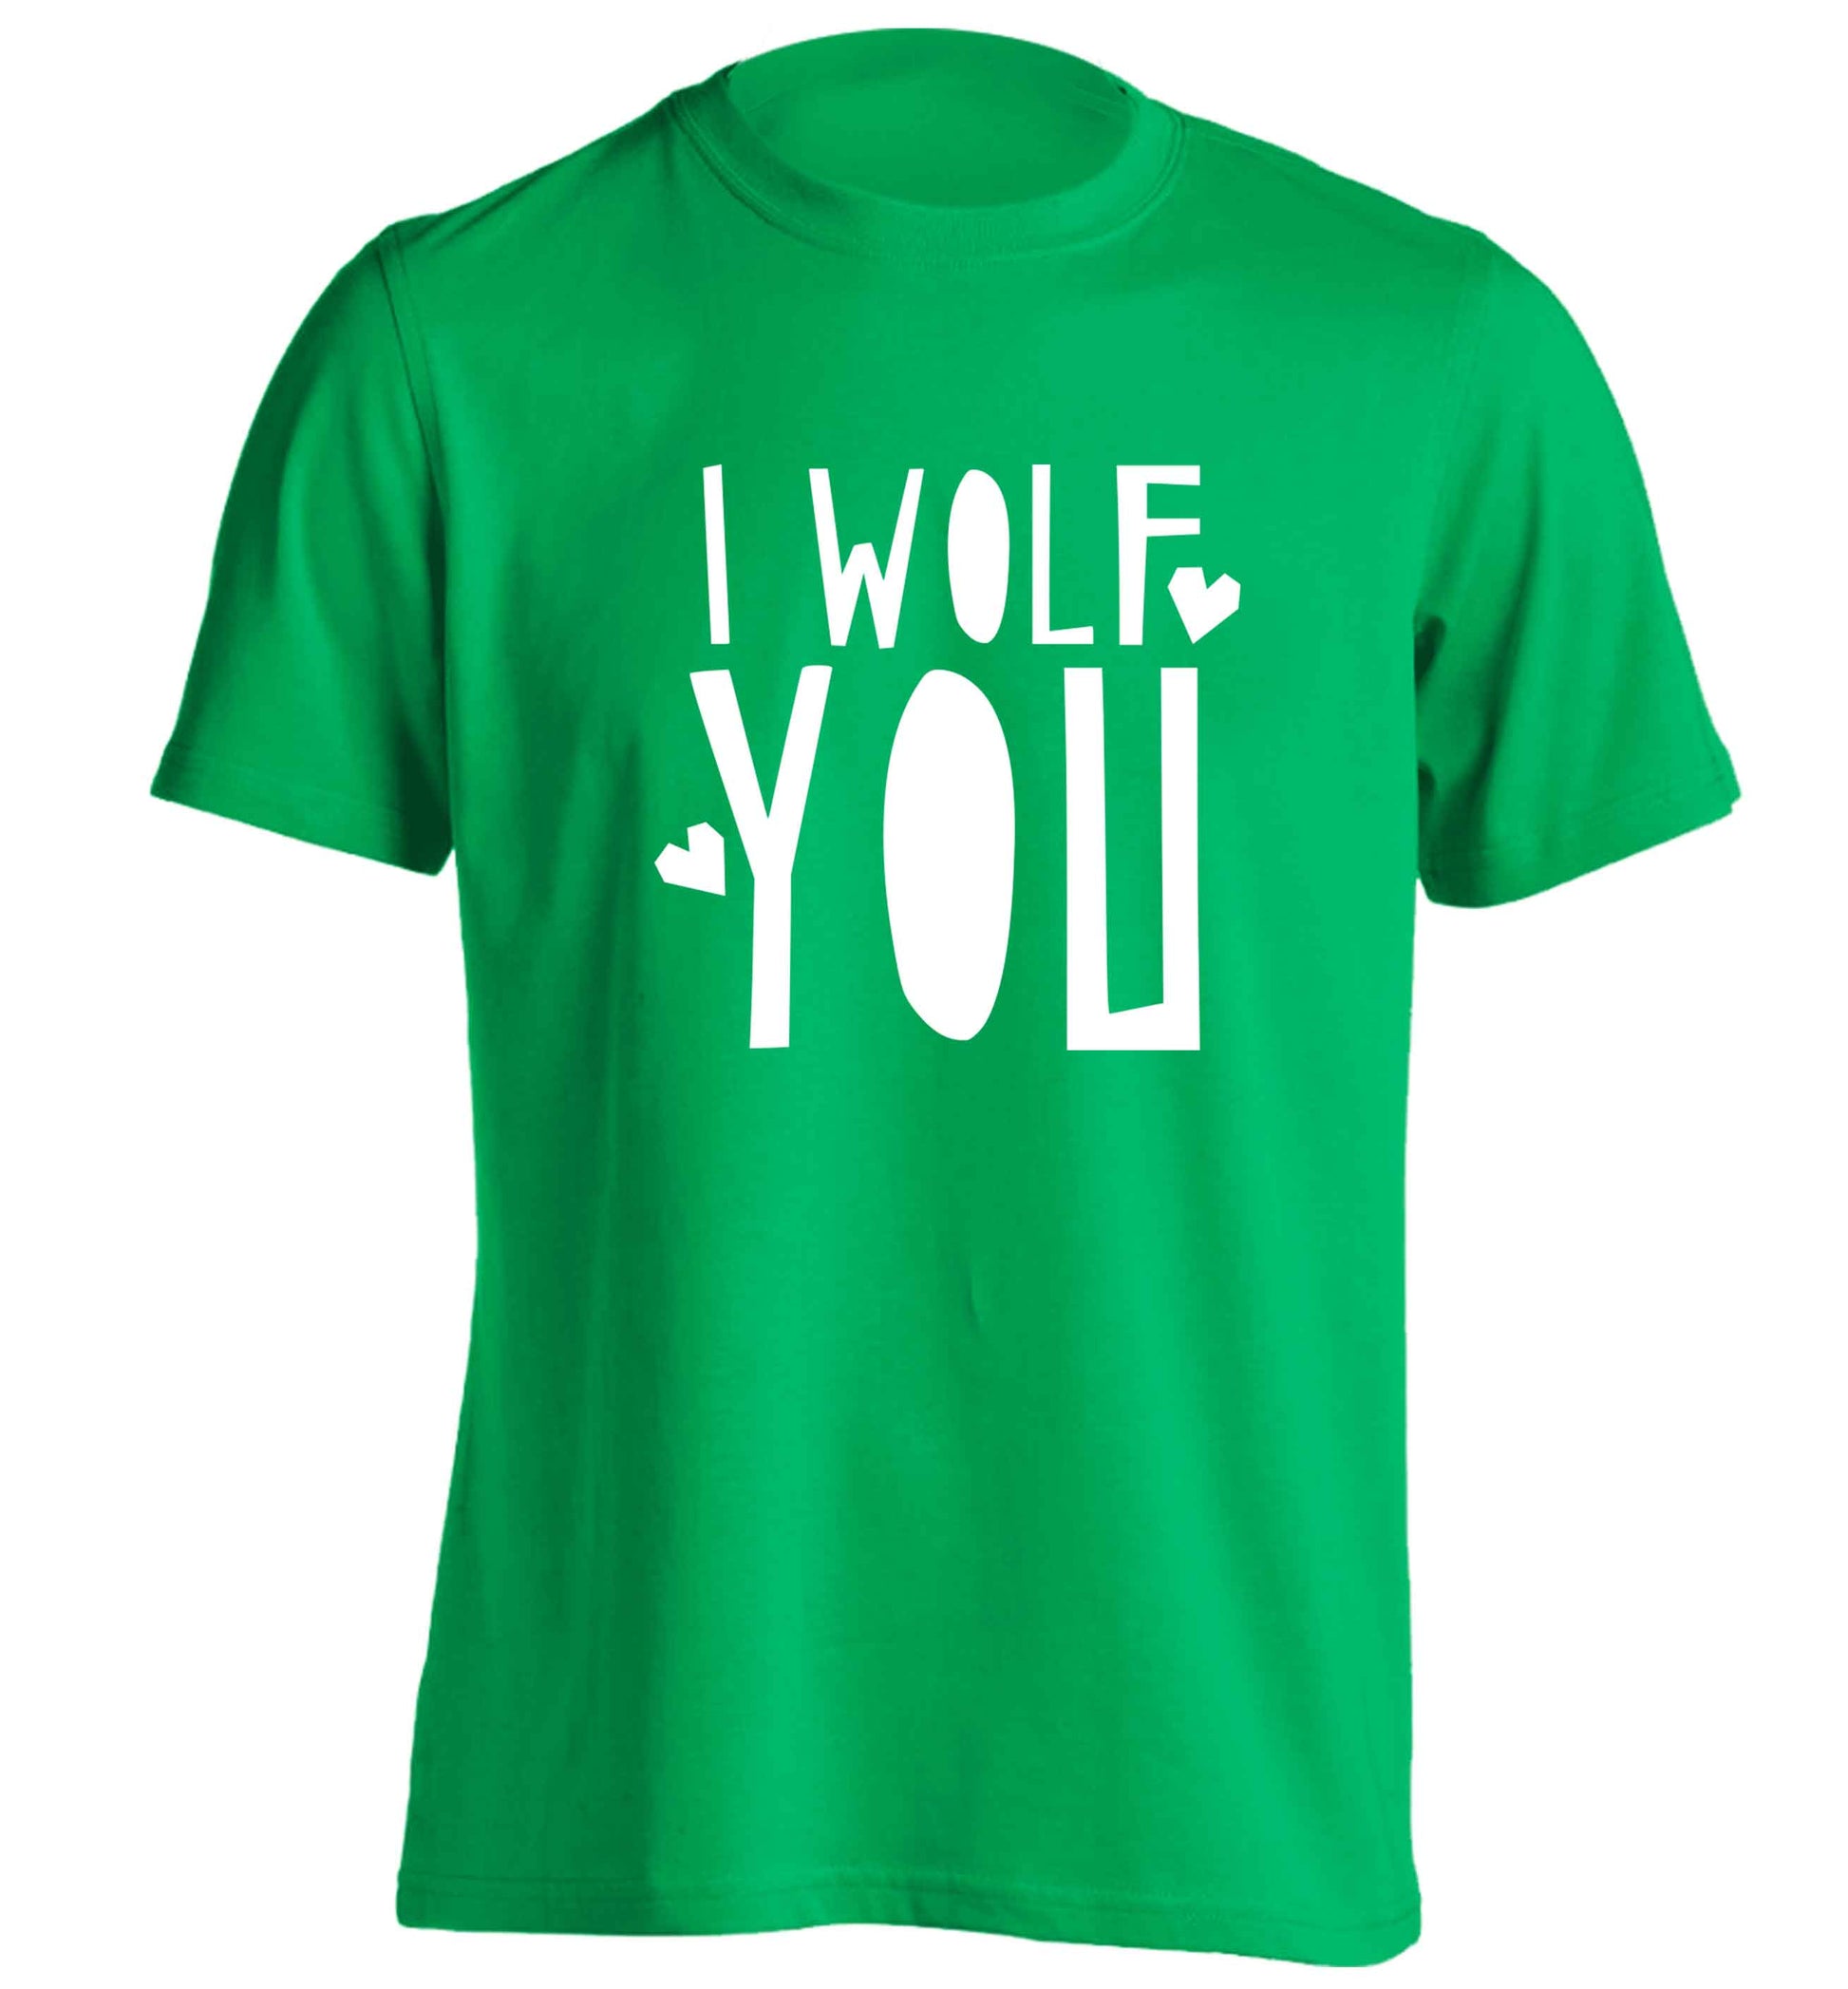 I wolf you adults unisex green Tshirt 2XL